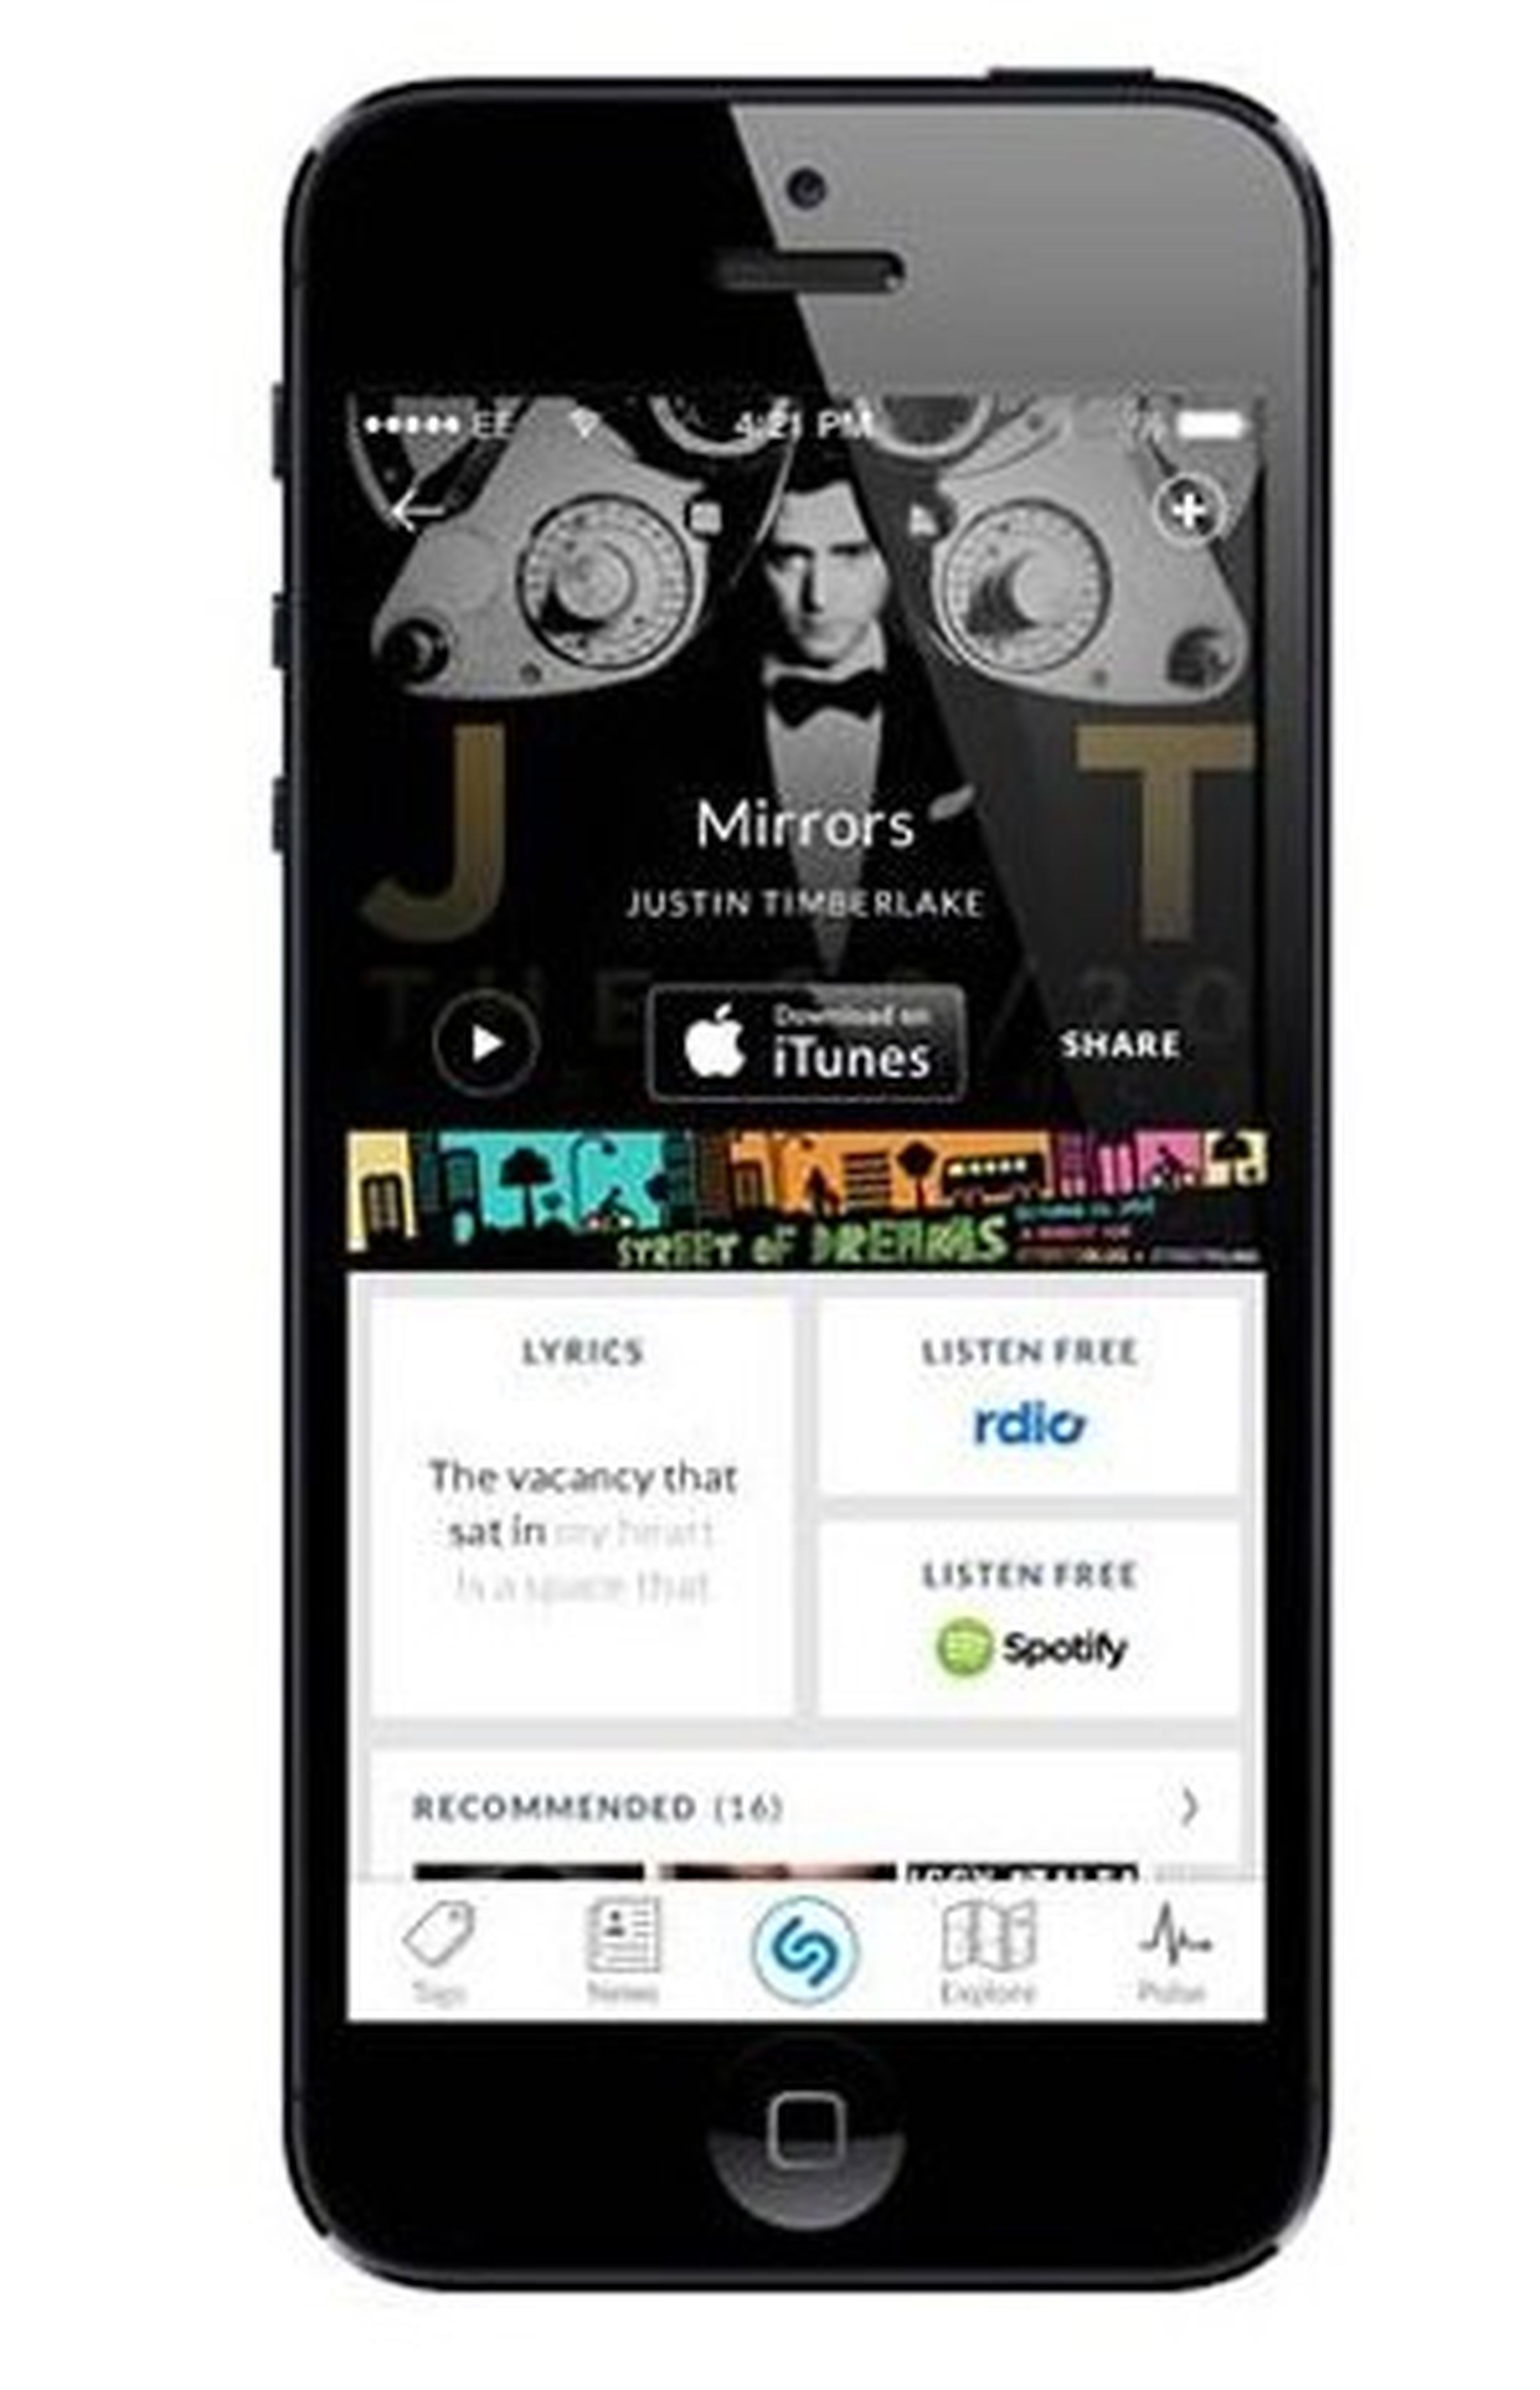 Rediseño "más social" de la app de Shazam para iPhone